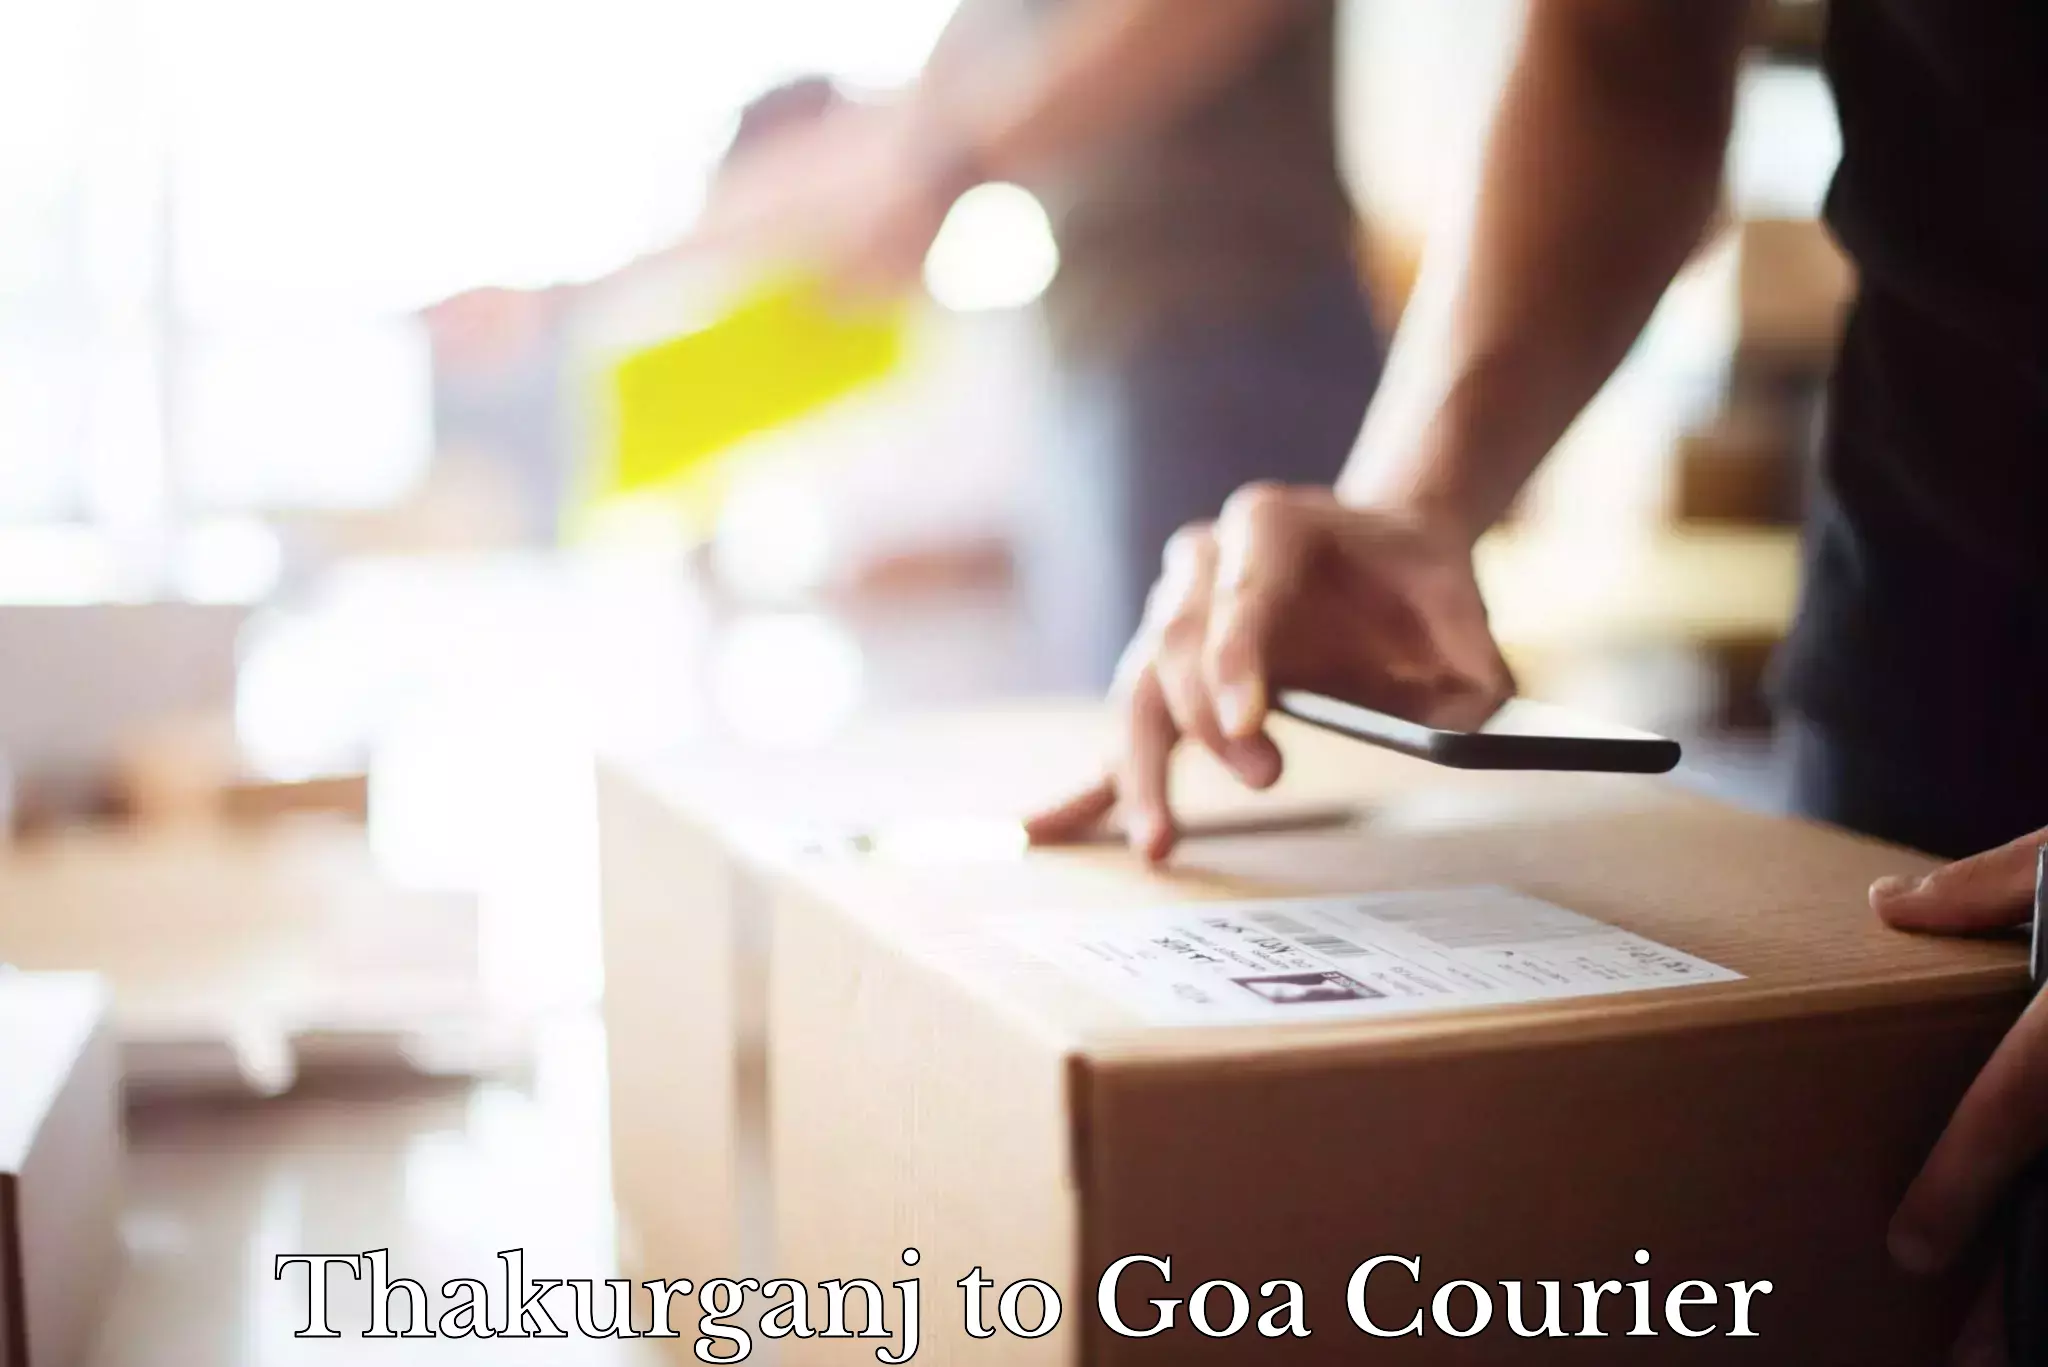 Global courier networks Thakurganj to Goa